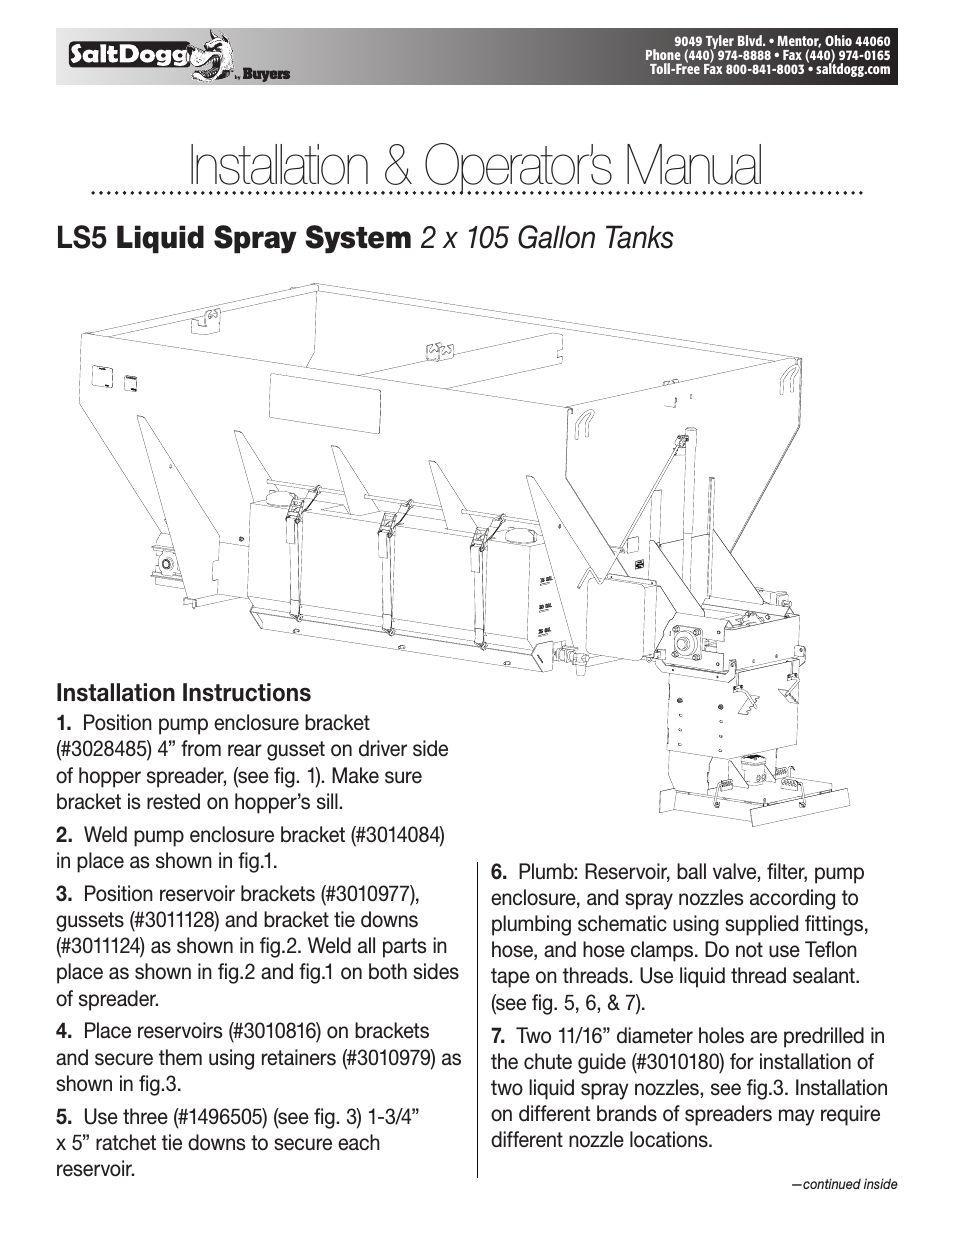 LS5 Liquid Spray System